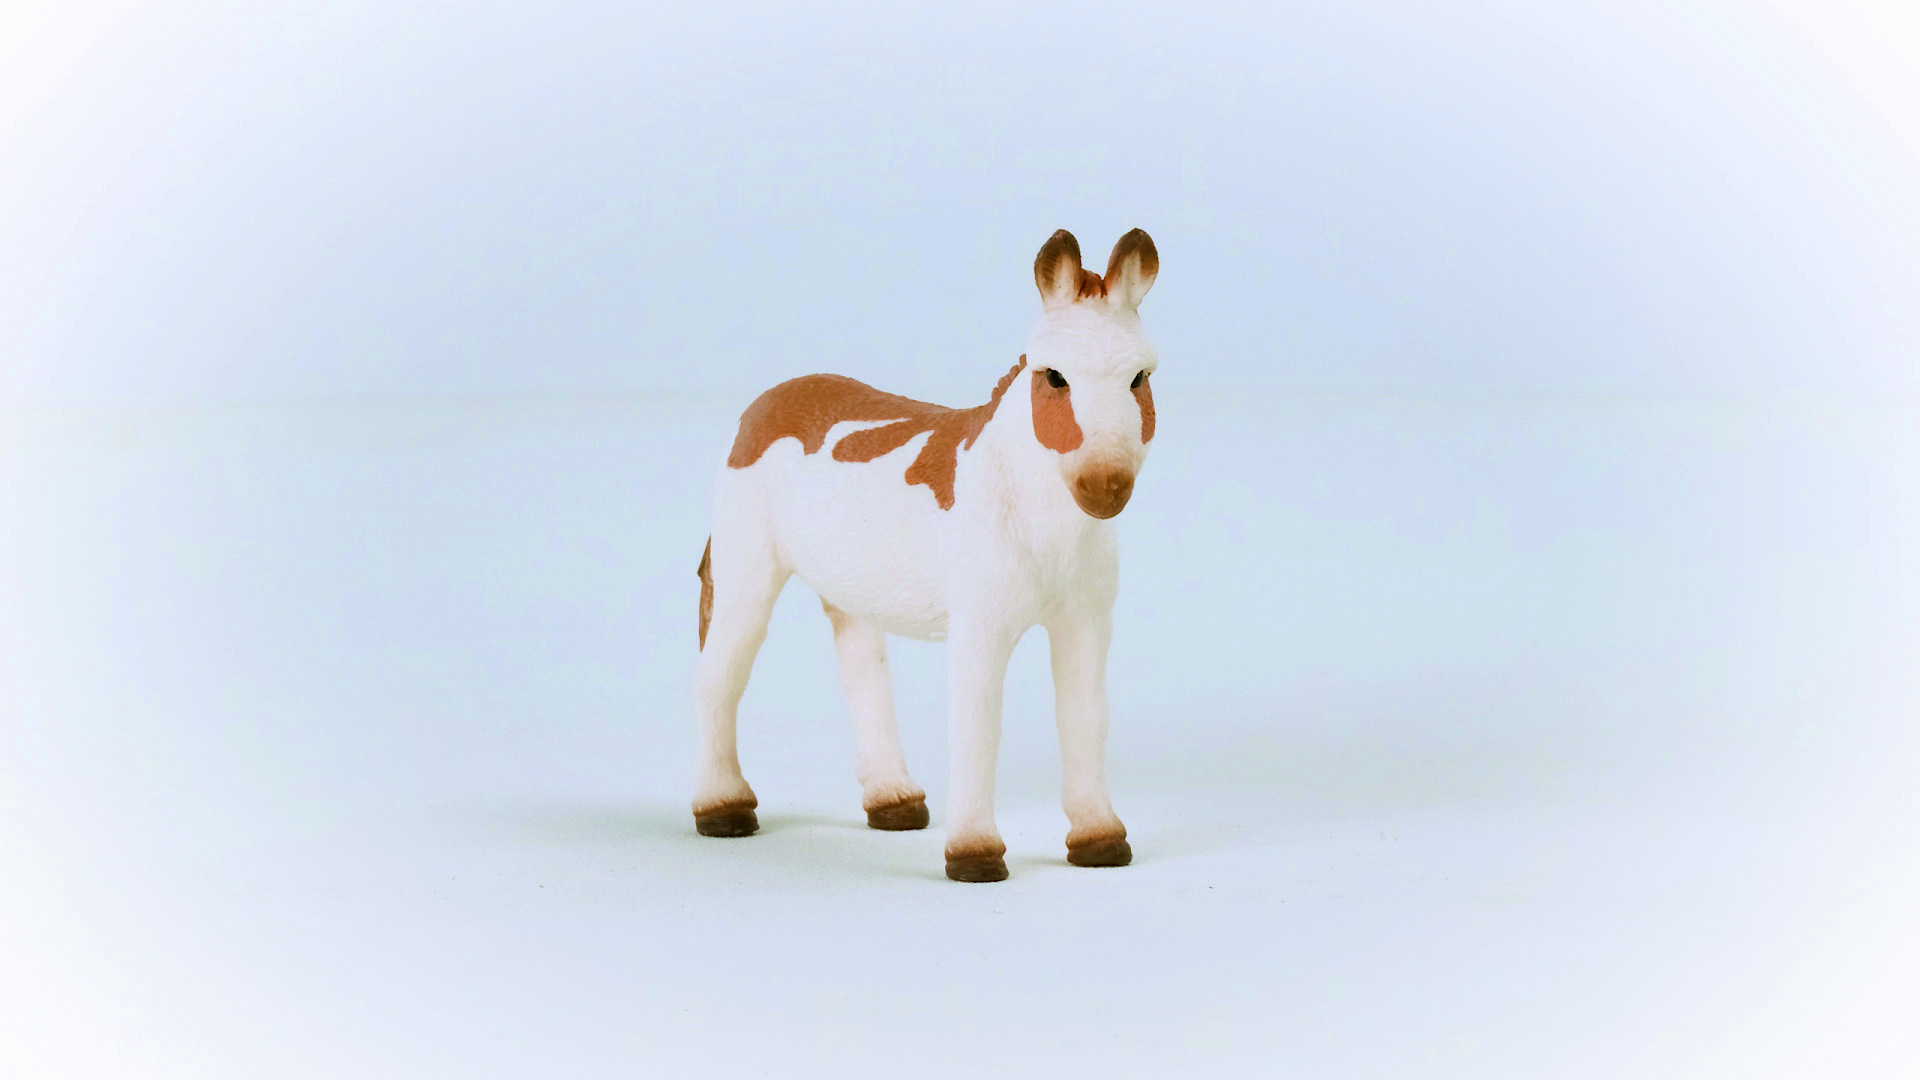 SCHLEICH 13961 Spielfigur Weiß/Braun gefleckt Esel, Amerikanischer